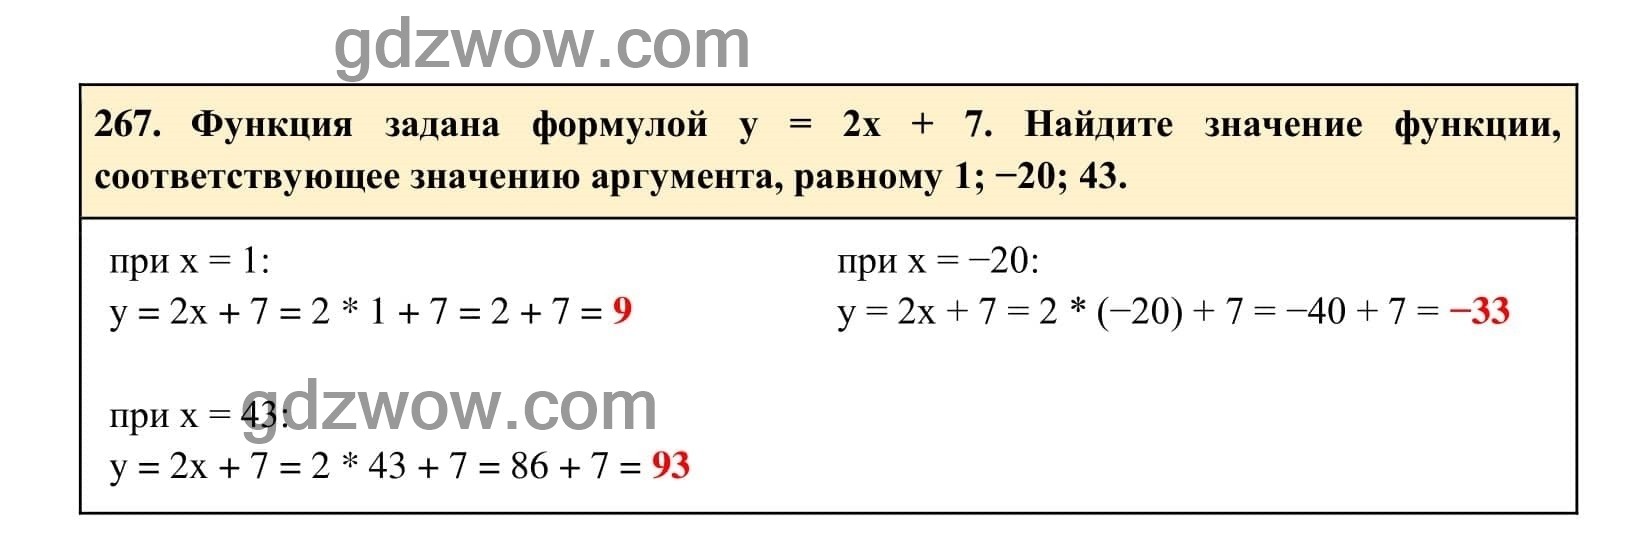 Упражнение 267 - ГДЗ по Алгебре 7 класс Учебник Макарычев (решебник) - GDZwow